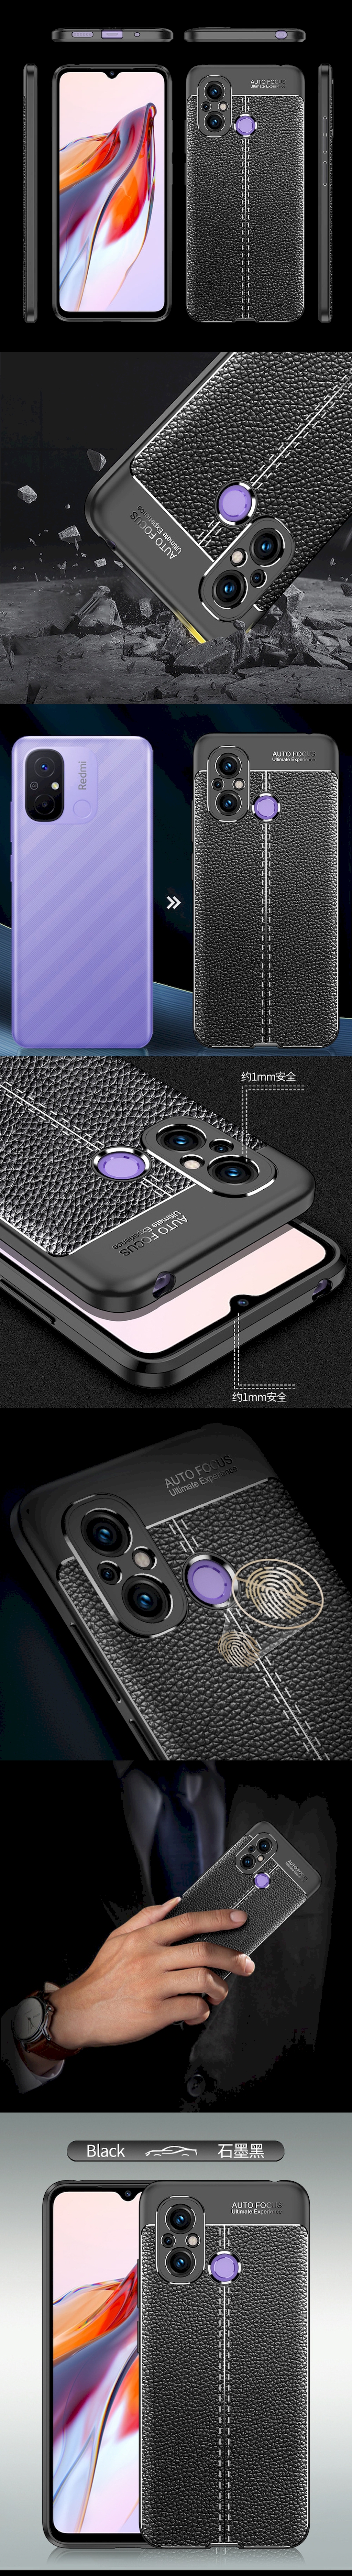 荔枝紋保護殼(INCLUSIVE) - 皮革紋造型超薄全包手機殼背蓋